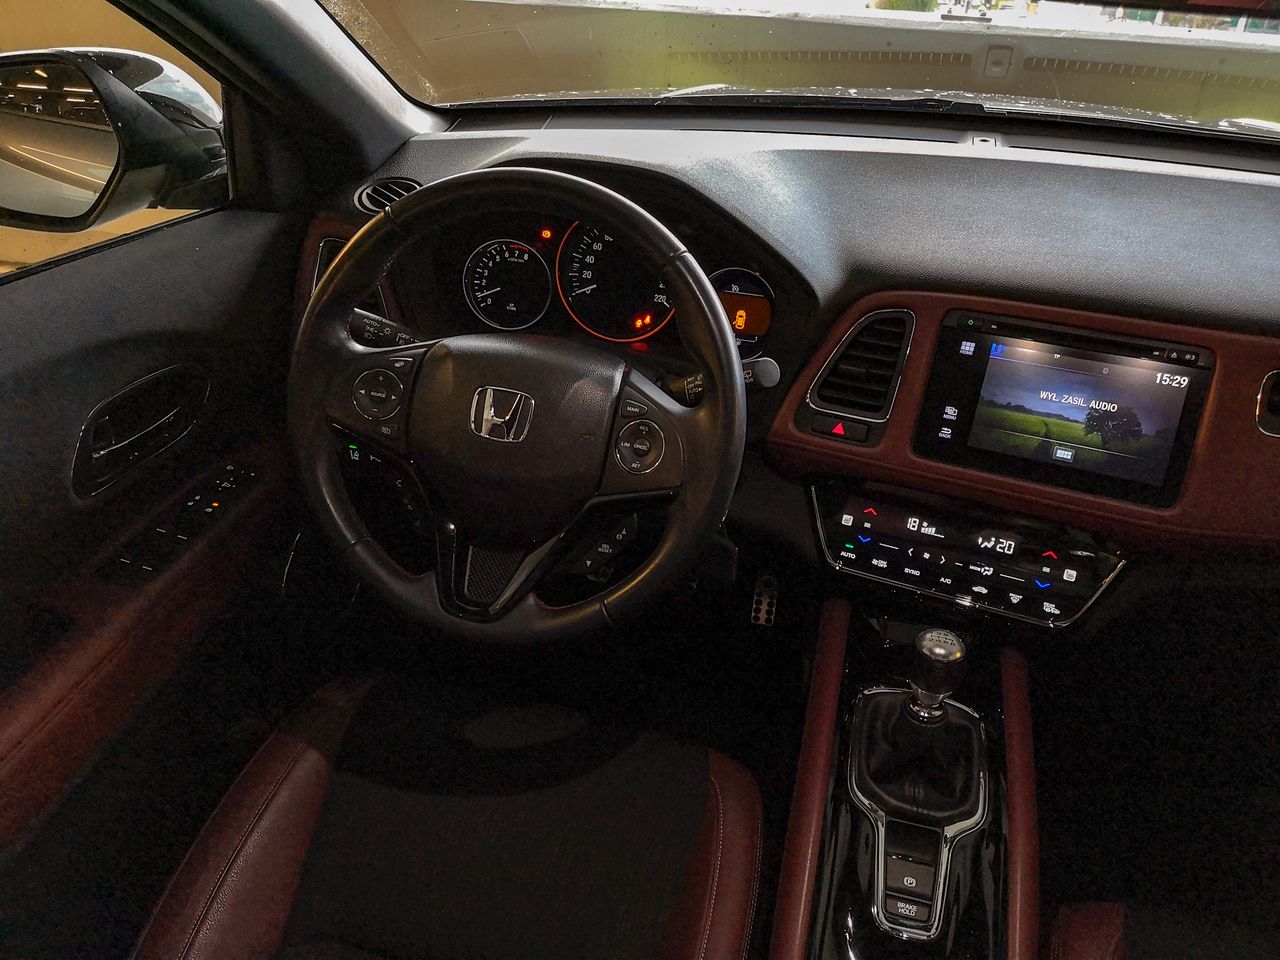 Honda HR-V: Nawigacja Garmin i systemy wspomagające bezpieczeństwo